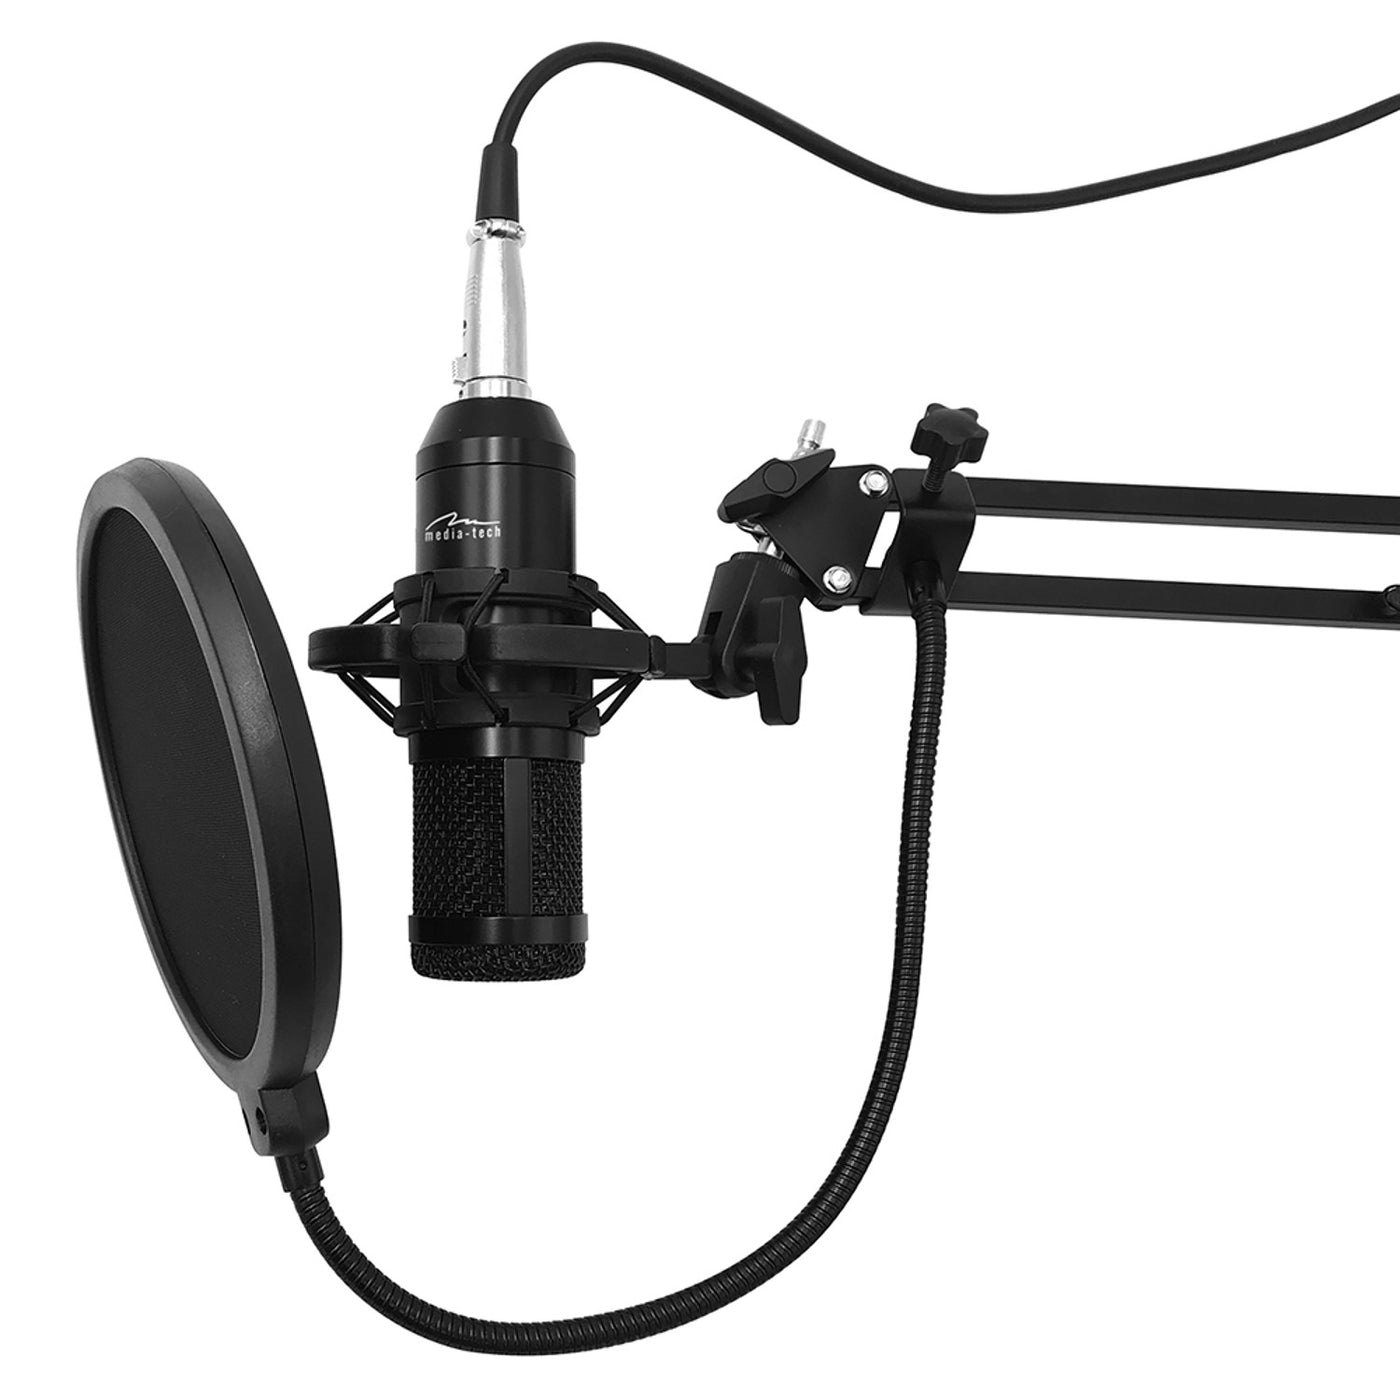 Mikrofon pojemnościowy Media-Tech, regulowany statyw, akcesoria, MT397K